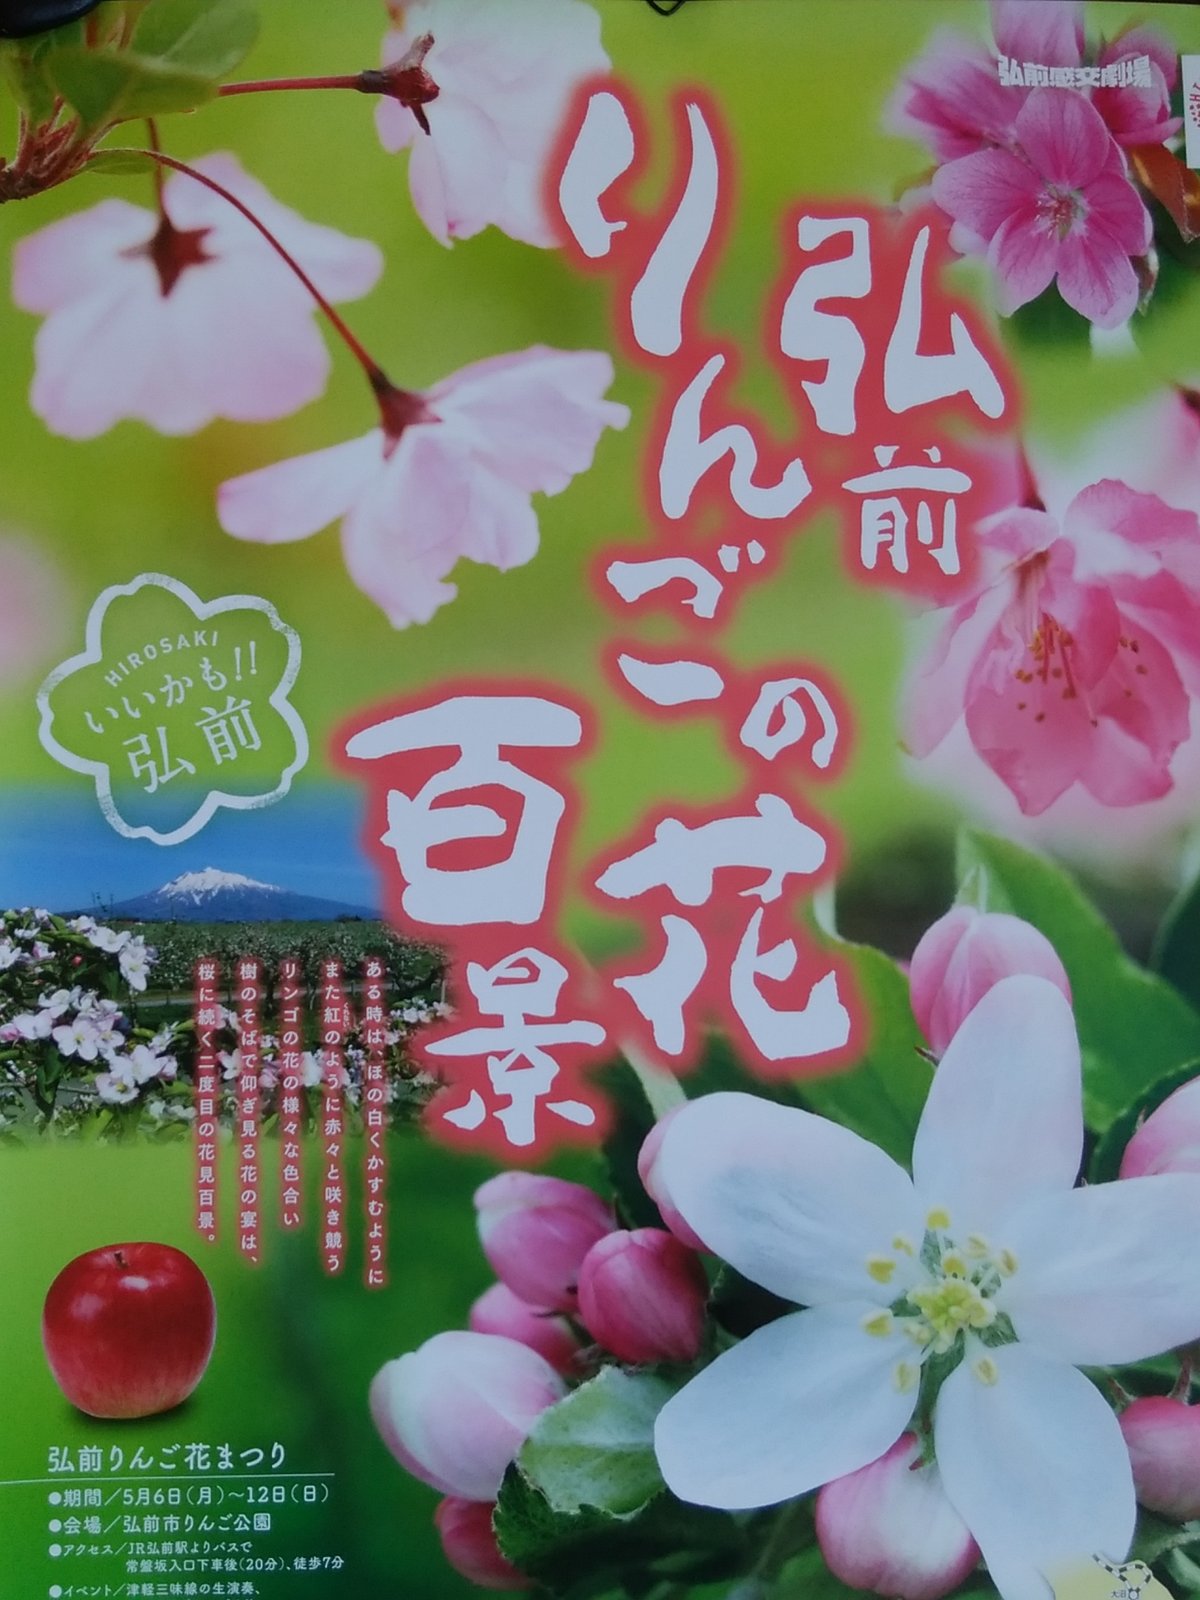 弘前りんごの花百景ポスター 猫の時間 しなじく